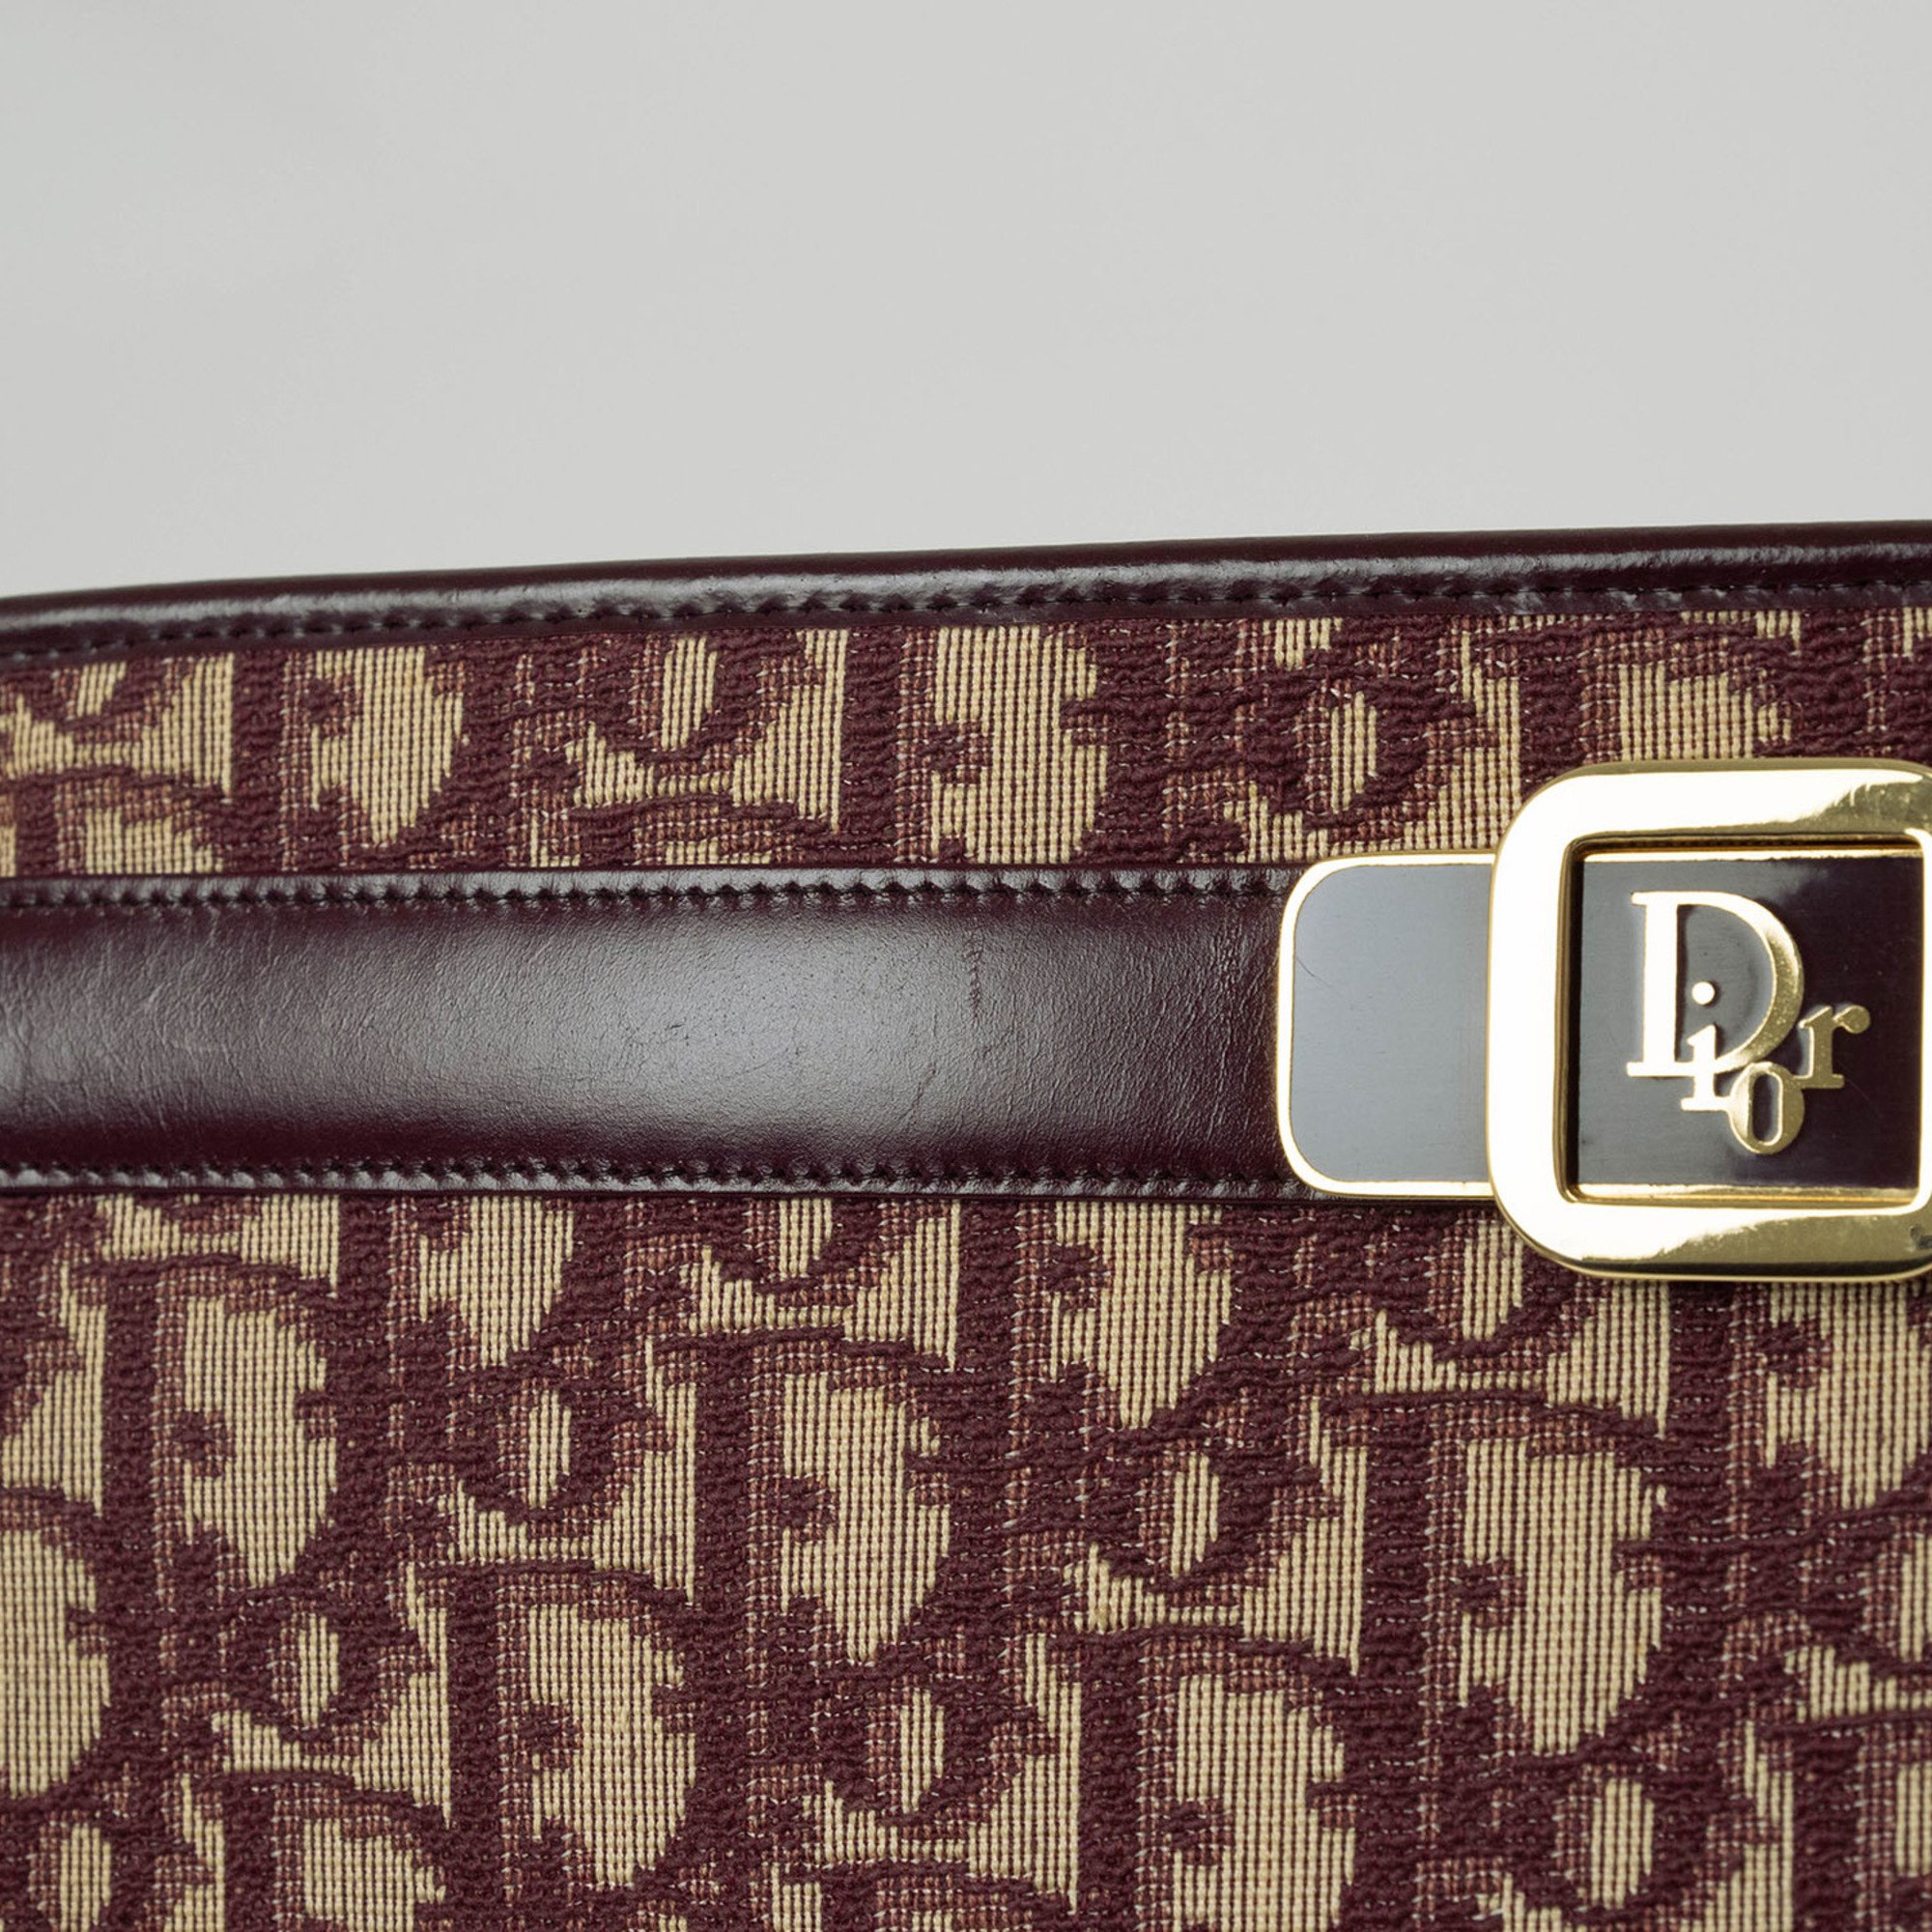 Christian Dior Trotter Shoulder Bag Bordeaux Canvas Leather Women's